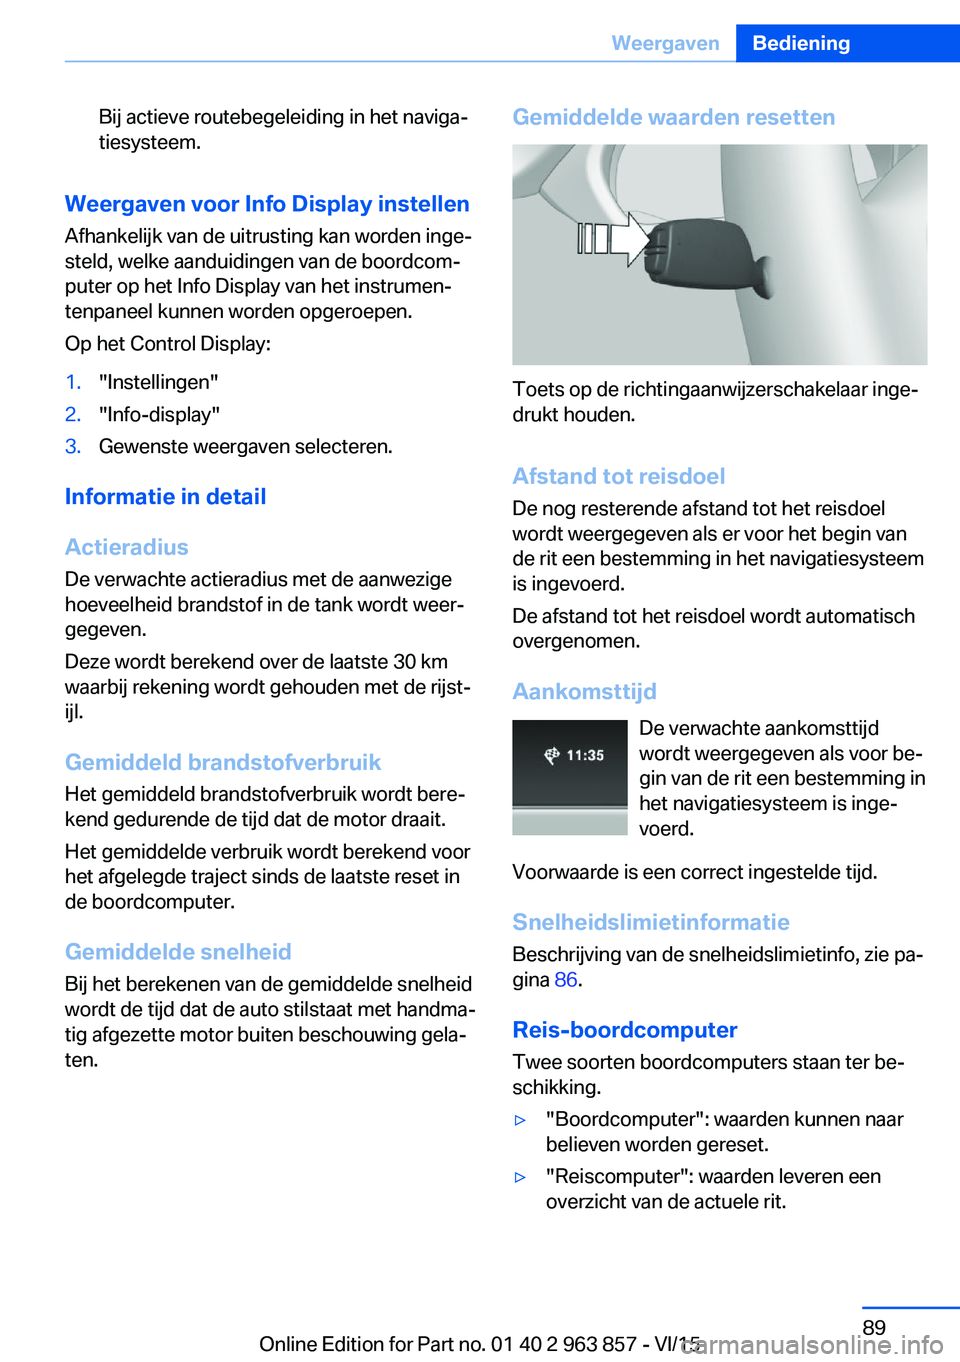 BMW 2 SERIES COUPE 2016  Instructieboekjes (in Dutch) Bij actieve routebegeleiding in het naviga‐
tiesysteem.
Weergaven voor Info Display instellen
Afhankelijk van de uitrusting kan worden inge‐
steld, welke aanduidingen van de boordcom‐
puter op h